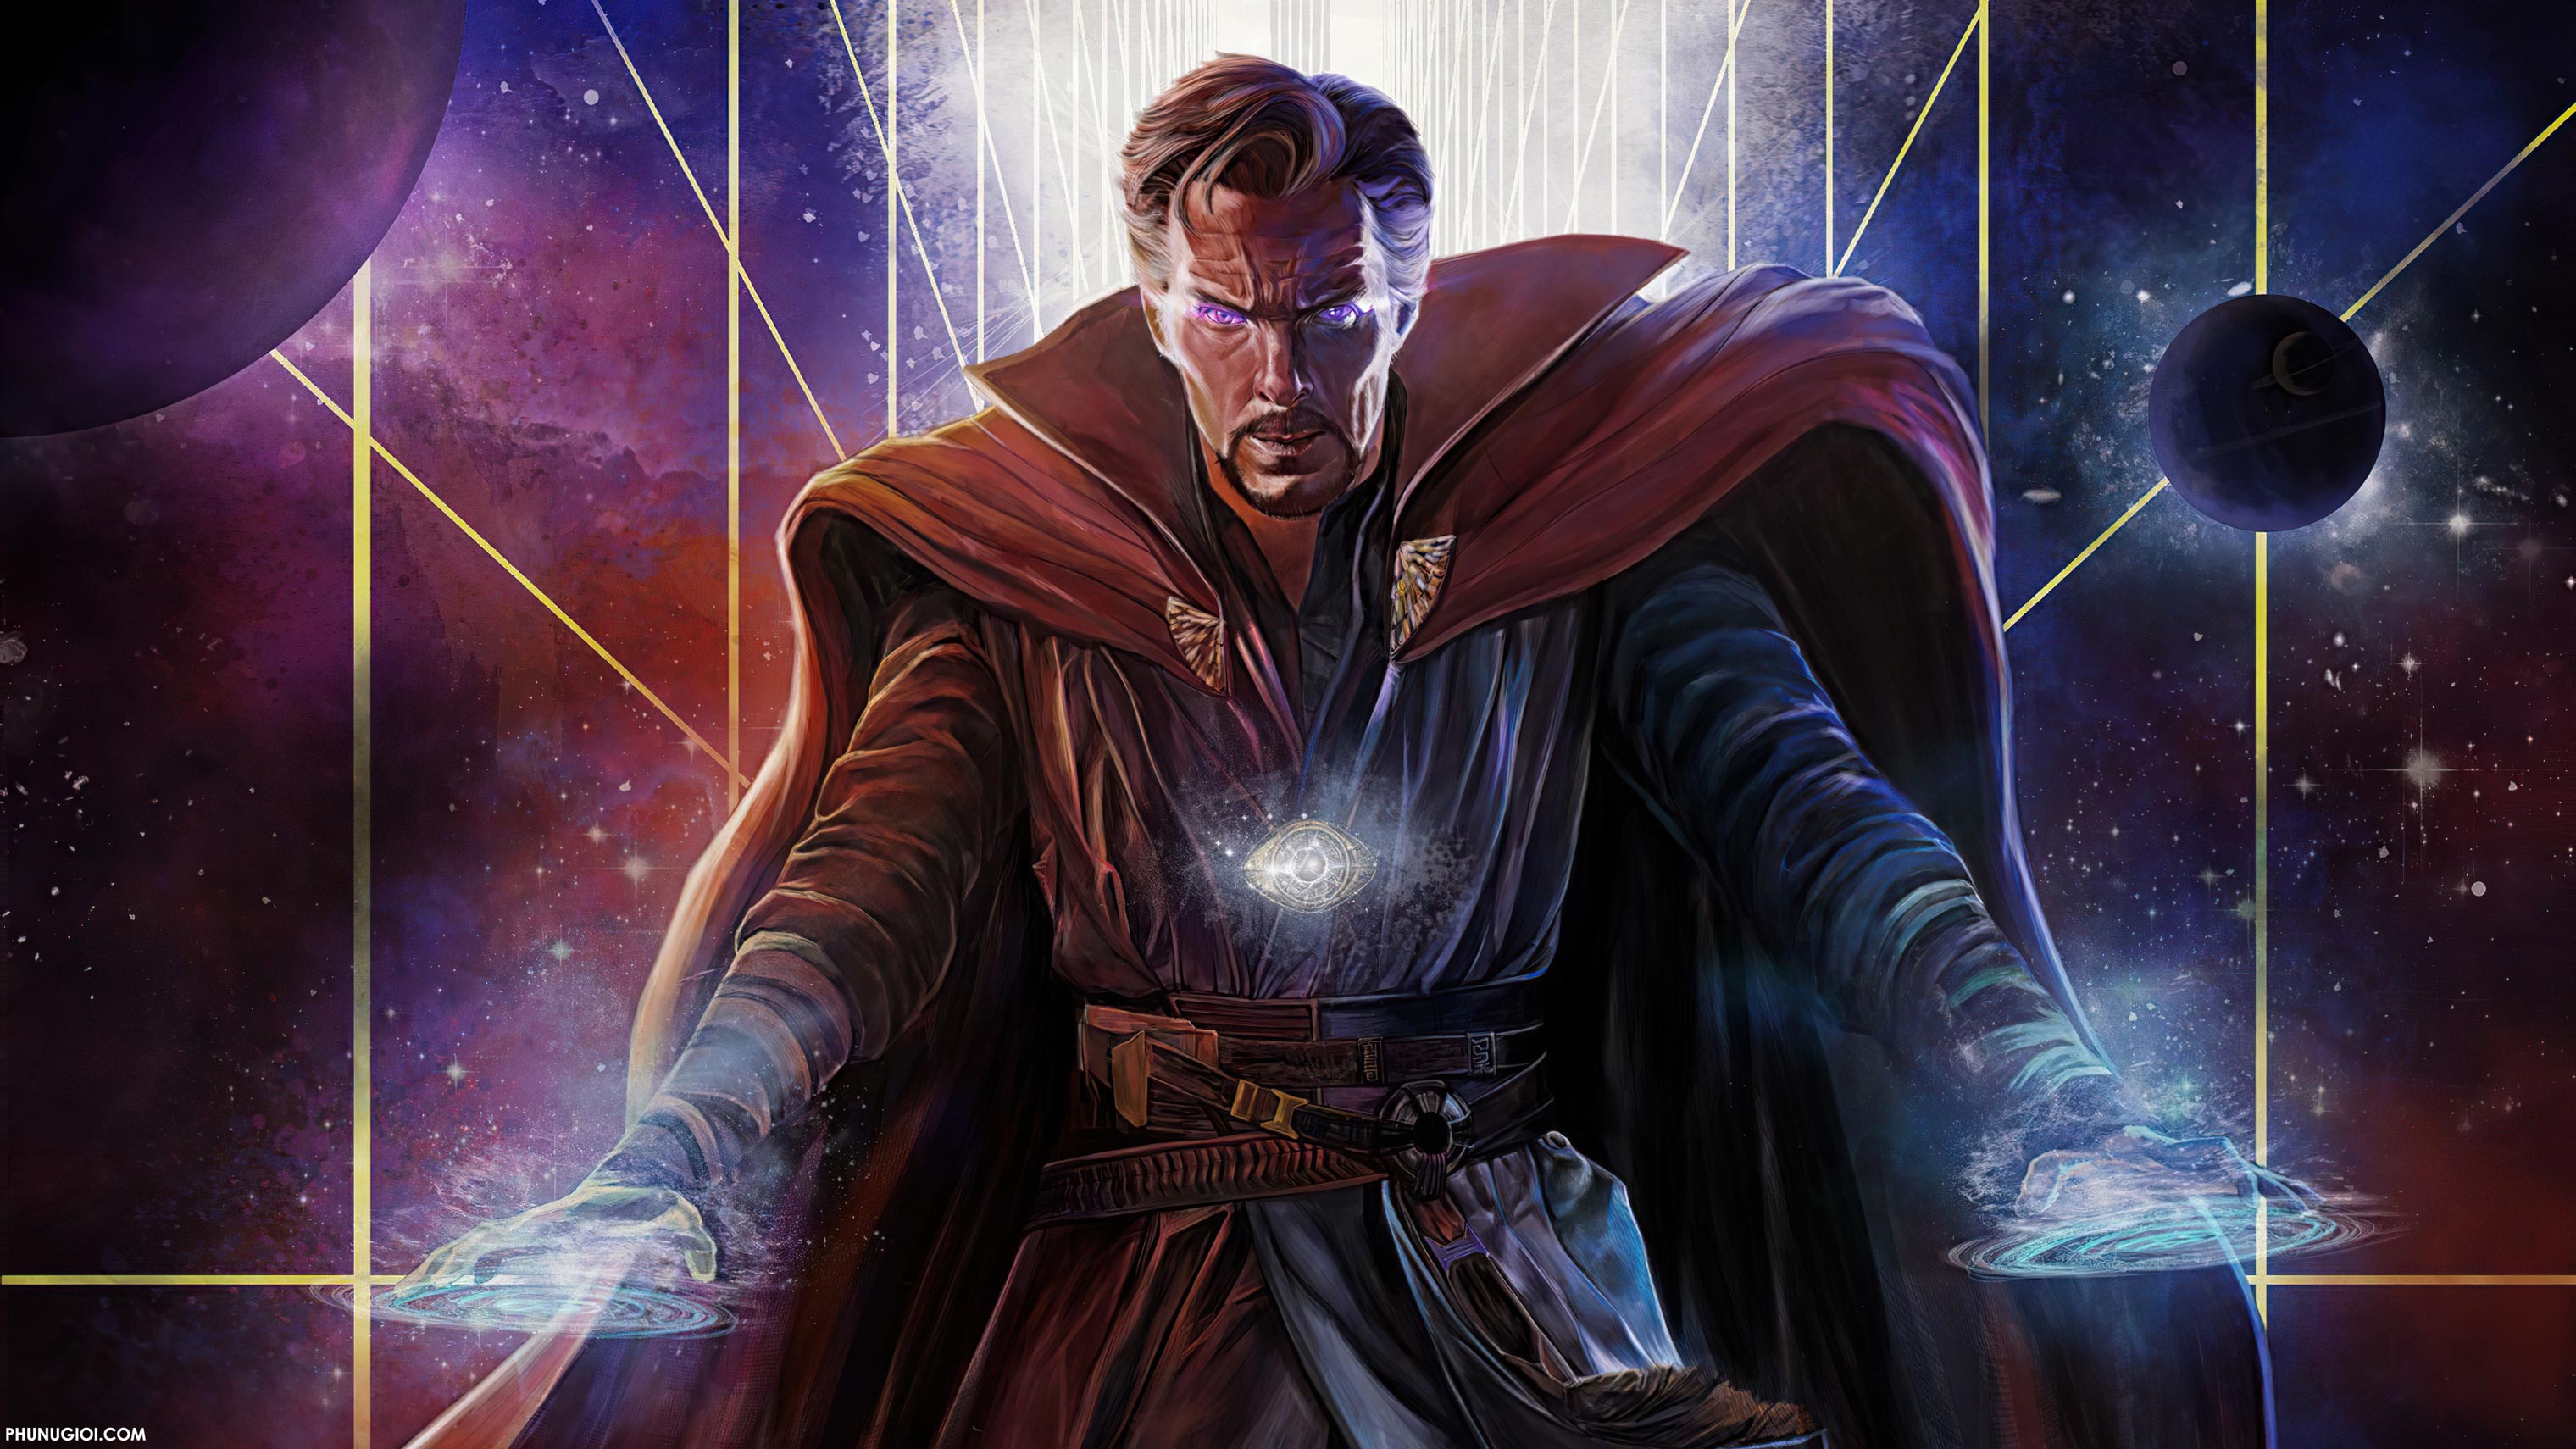 Doctor Strange: Xem hình ảnh Doctor Strange để khám phá thế giới siêu nhiên đầy mê hoặc, với các kỹ năng ma thuật siêu phàm giúp anh chàng chiến đấu chống lại những thế lực đen tối. Hãy tìm hiểu thêm về vị bác sĩ này, bạn sẽ không thất vọng!